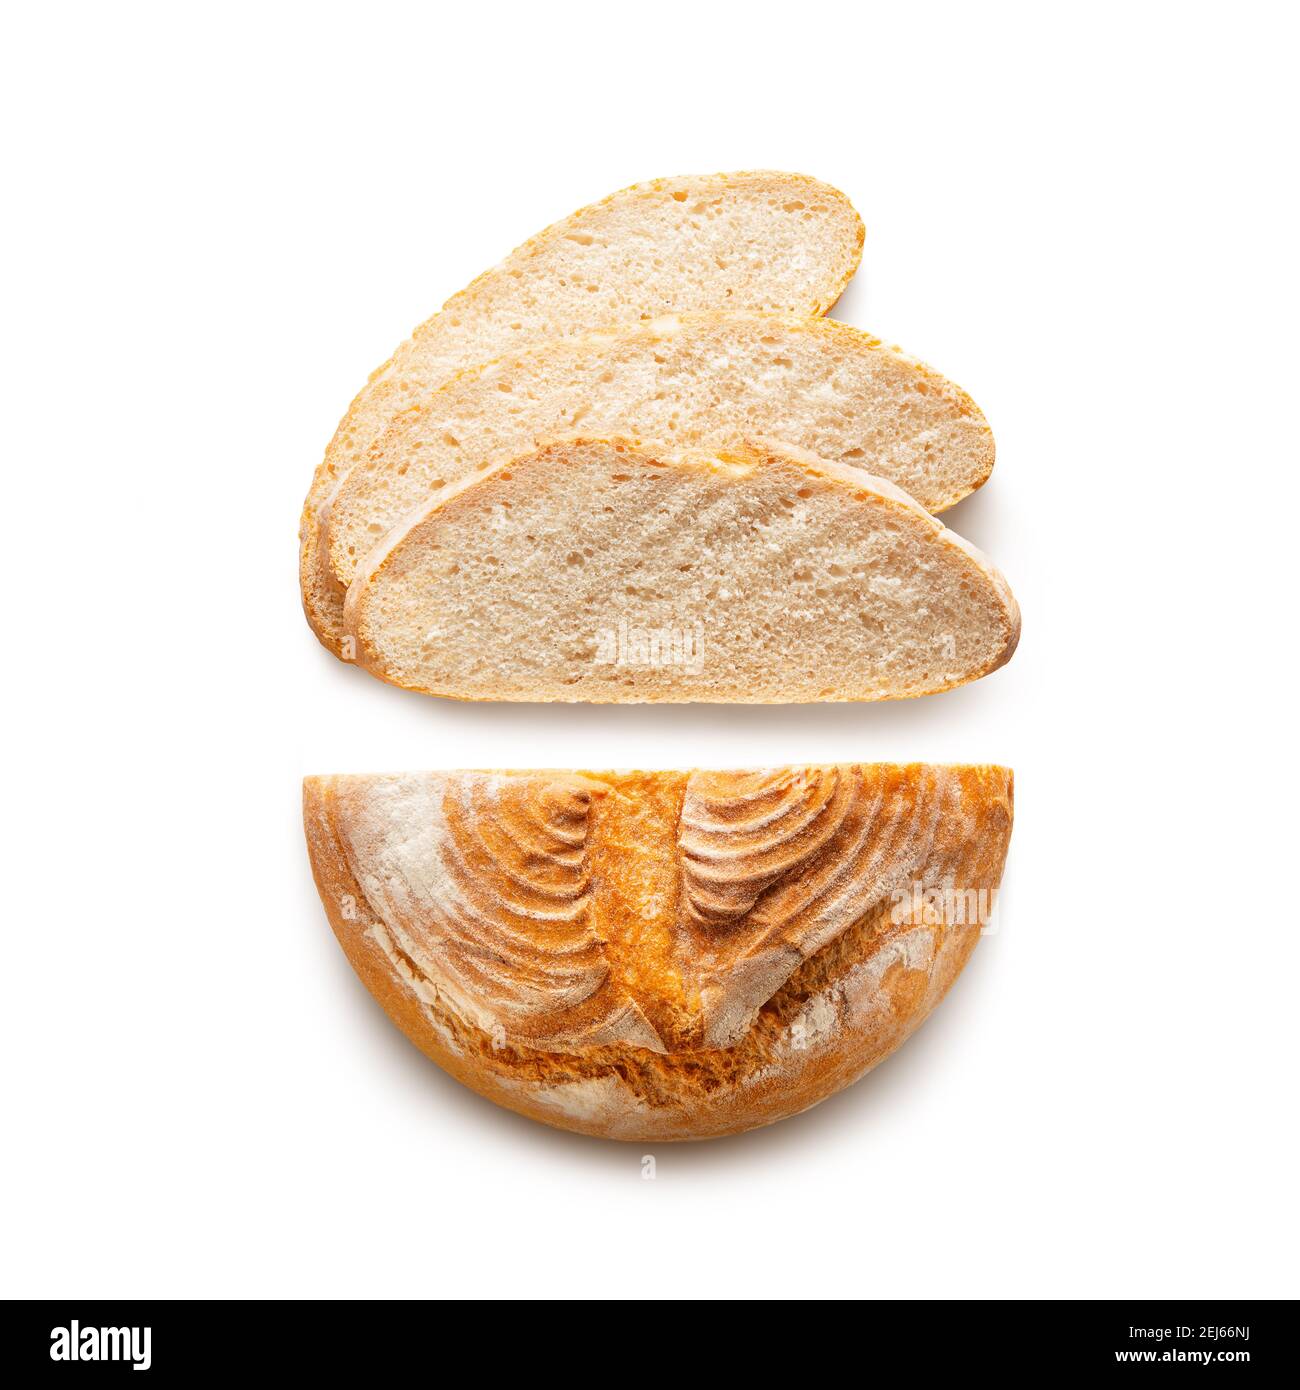 Pane tondeggiante cotto a fette isolato su sfondo bianco. Vista dall'alto Foto Stock